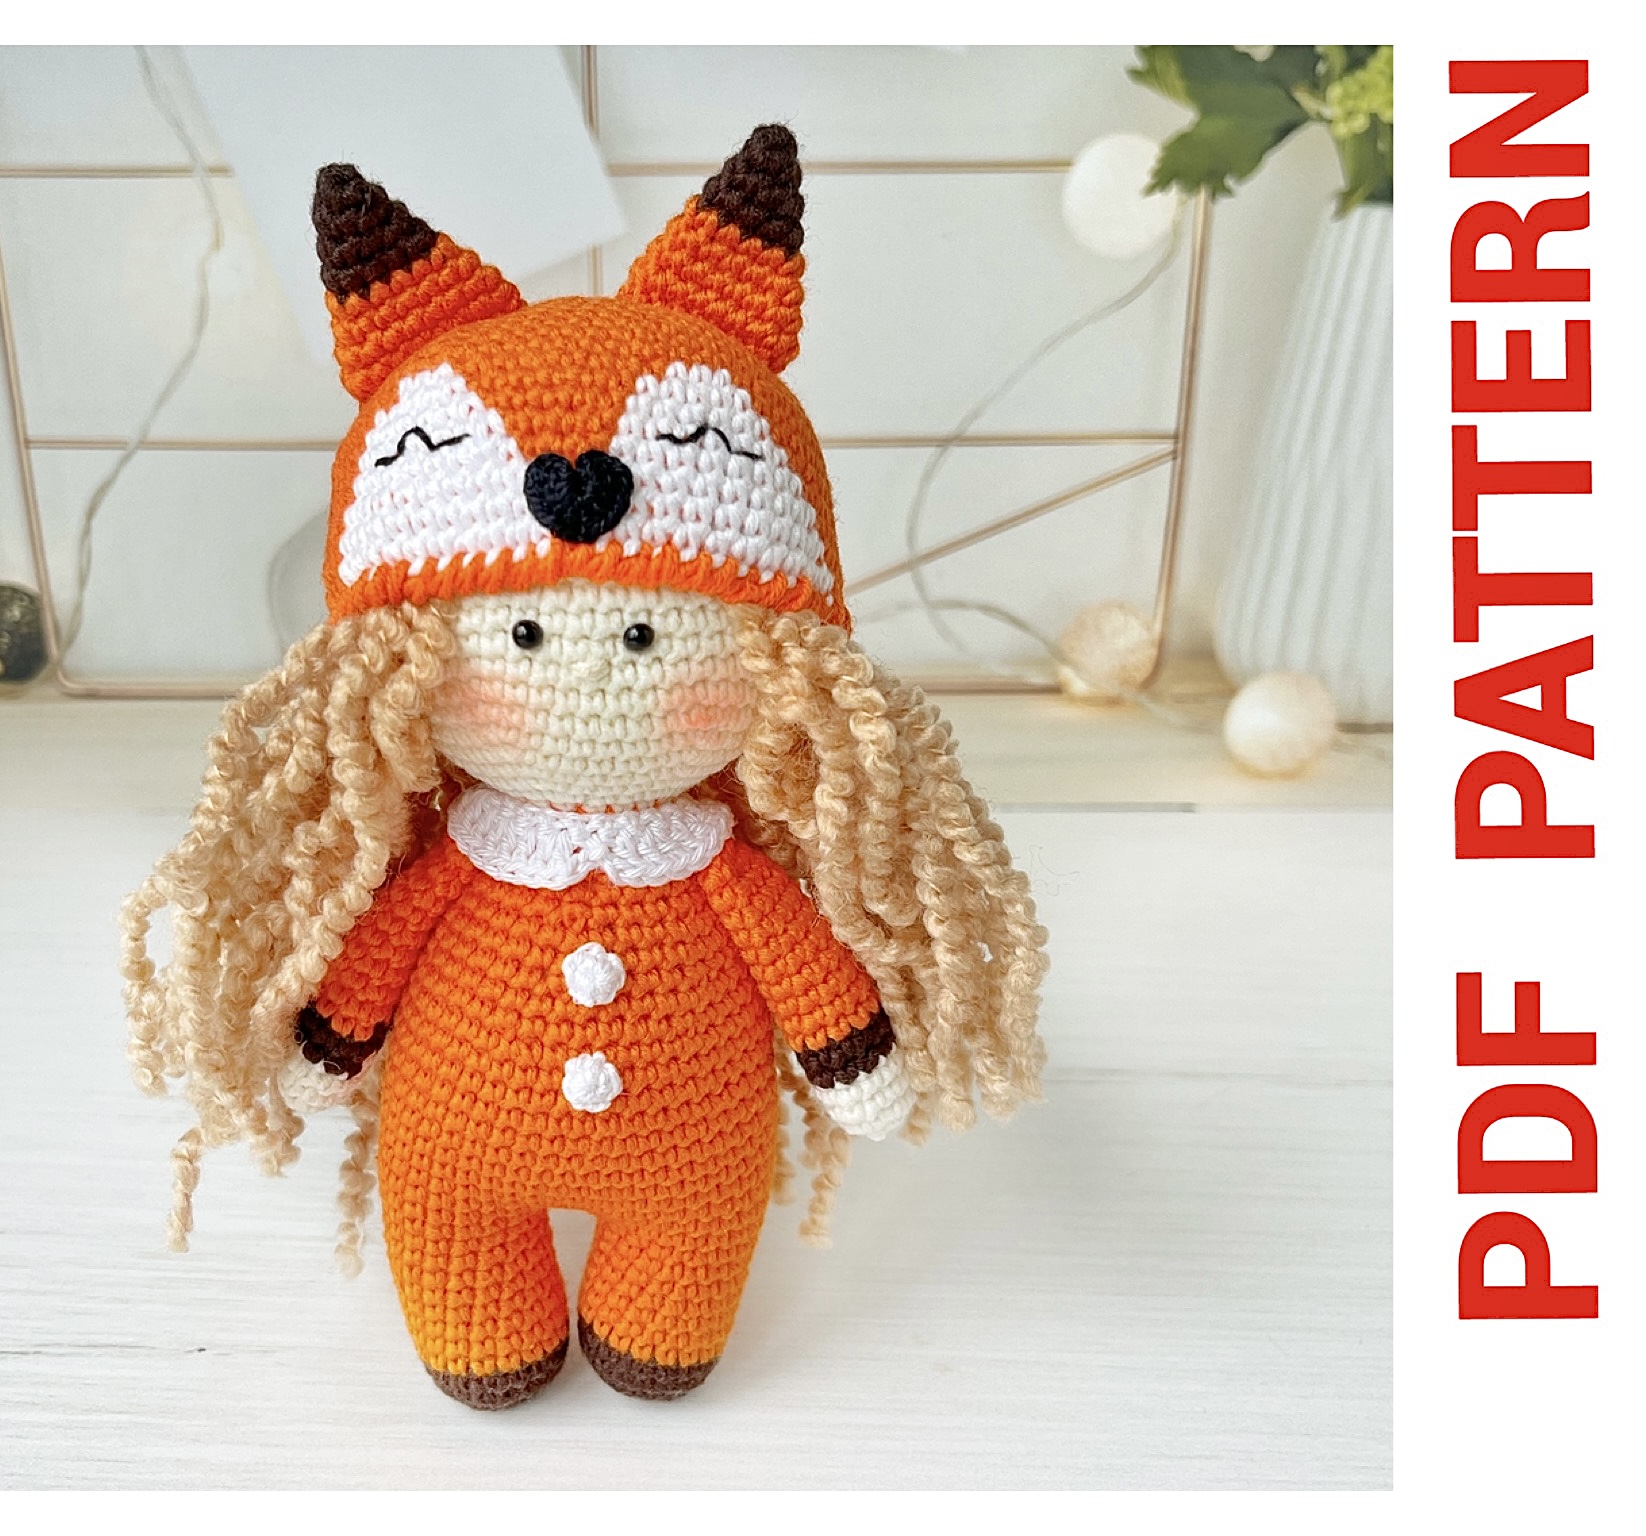 Amigurumi PATTERNS fox gifts stuffed animal toy - DailyDoll Shop